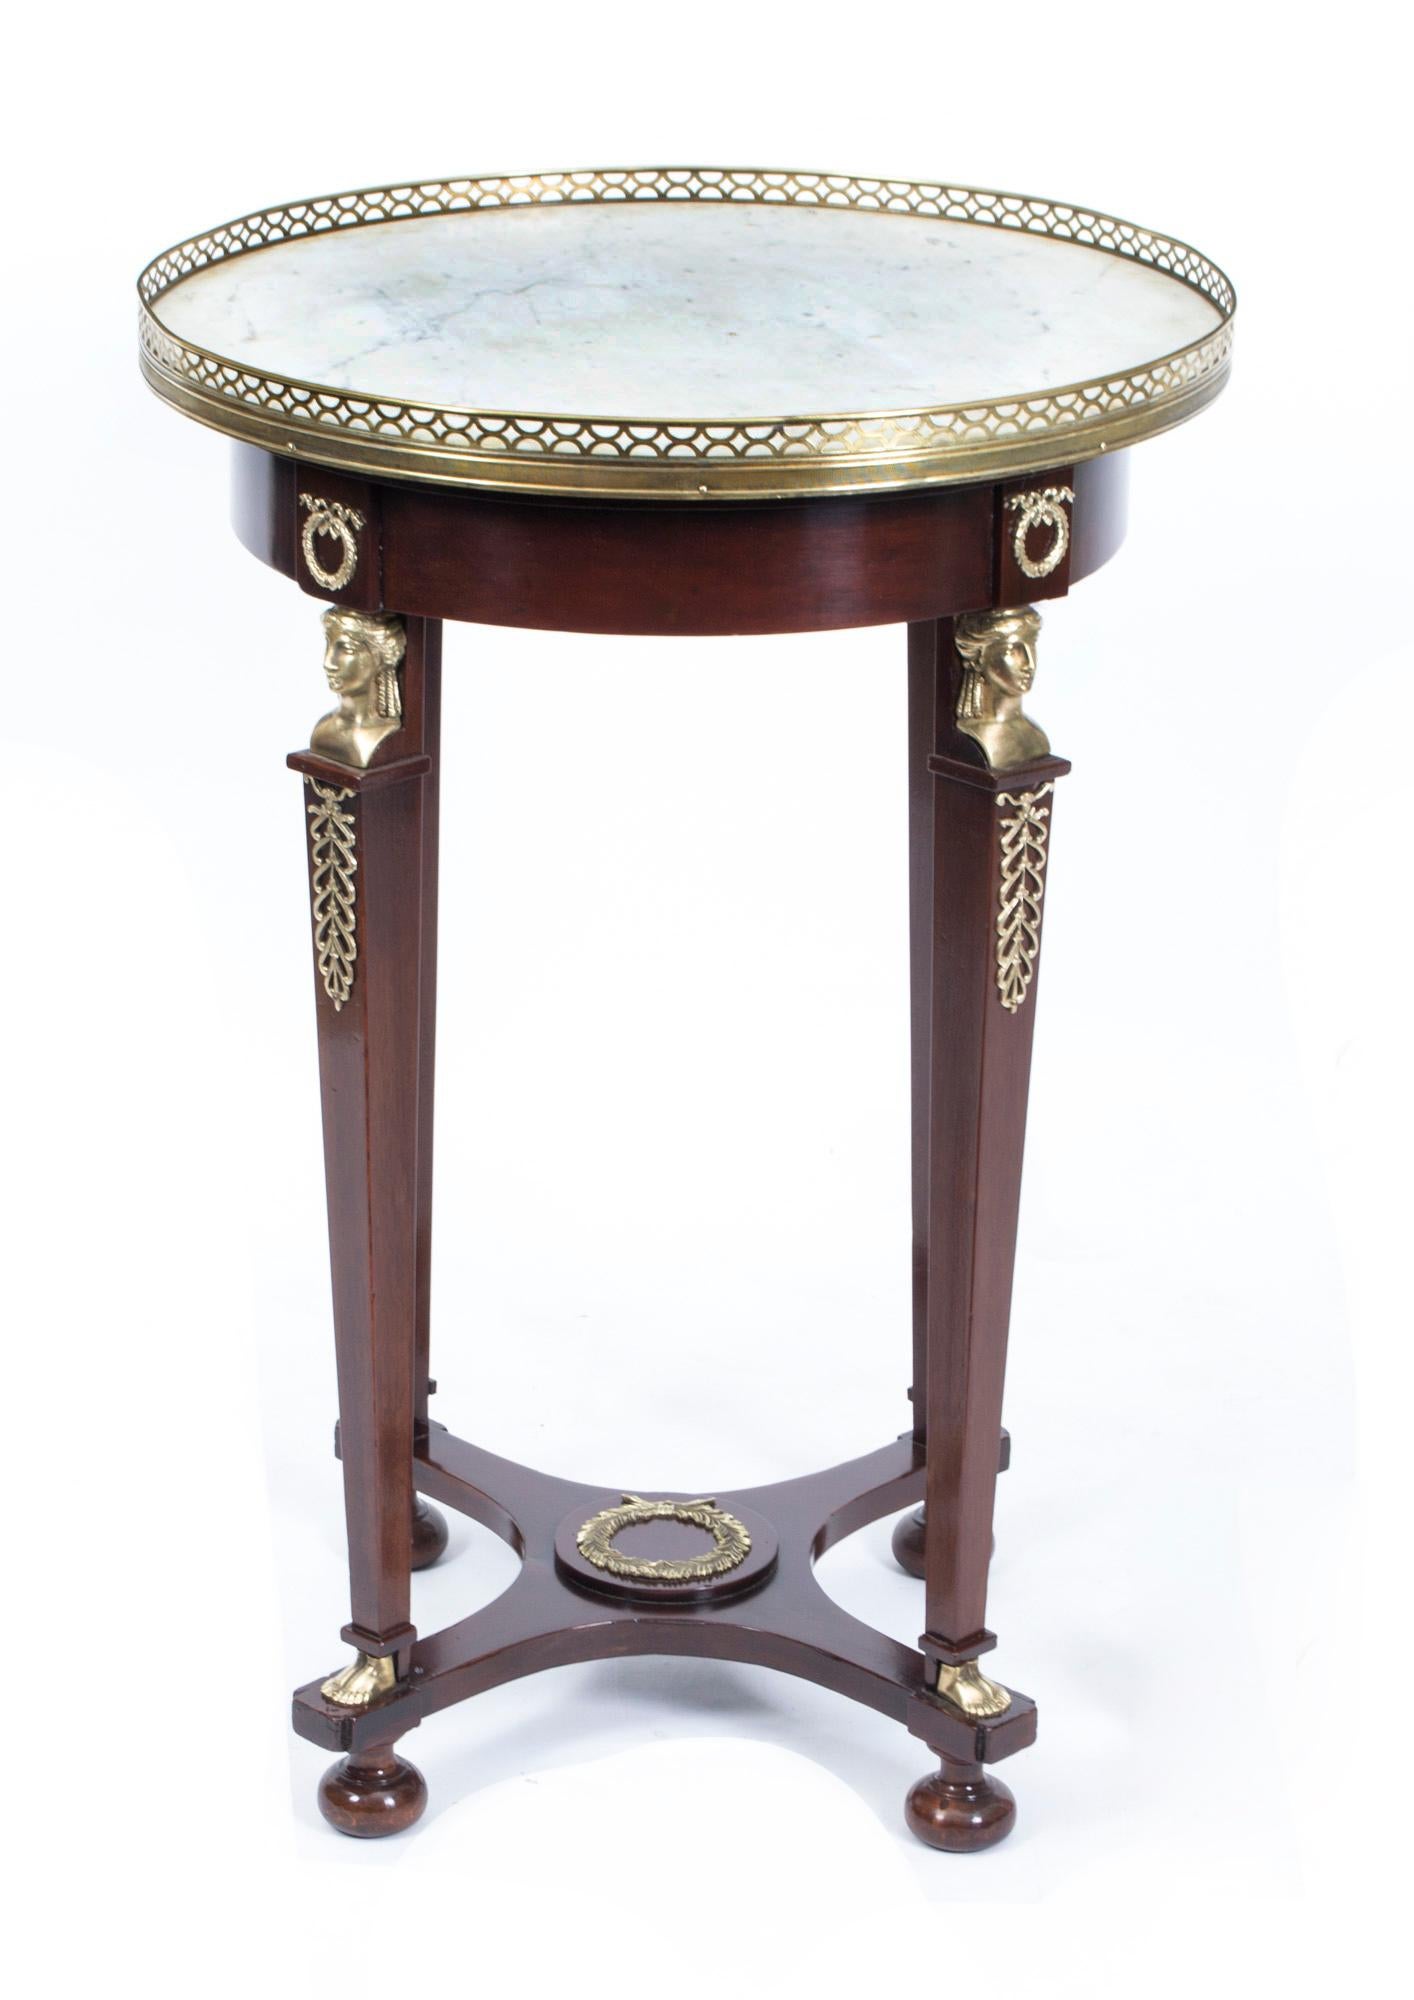 Dies ist ein wunderschöner, antiker, runder französischer Empire-Tisch mit verschnörkeltem Ormoludekor, typisch für die Empire-Periode, und einer schönen, eingesetzten Platte aus weißem 